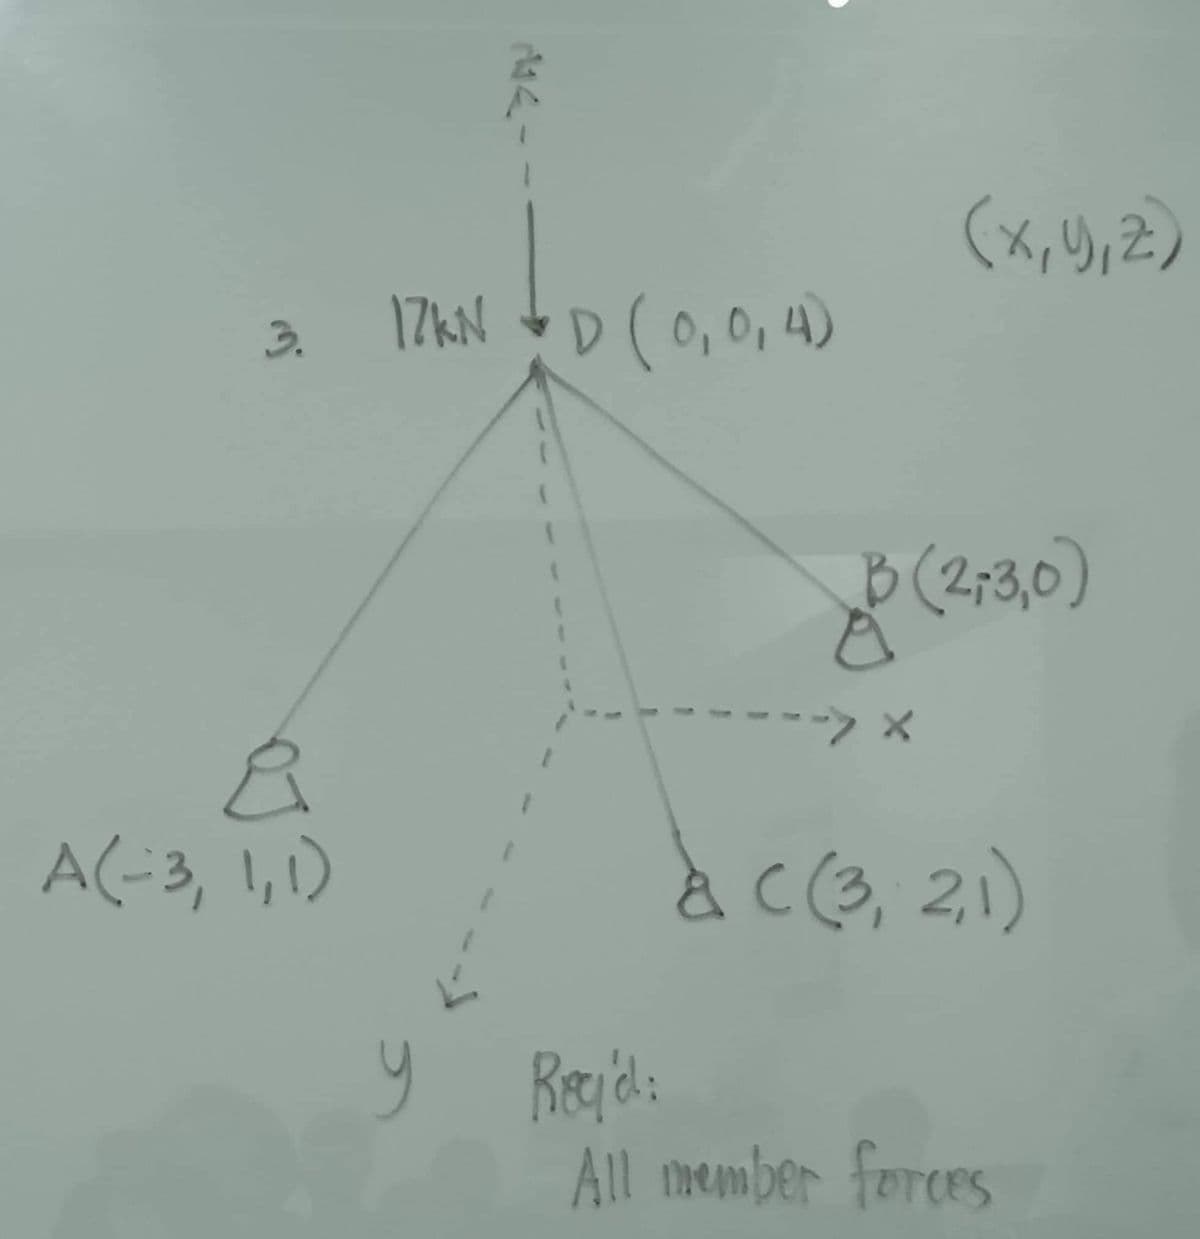 3.
&
A(-3, 1, 1)
17KN =D (0,0₁4)
y
(x, y, z)
(2,3,0)
-> X
& C (3,2,1)
с
Roy'd:
All member forces